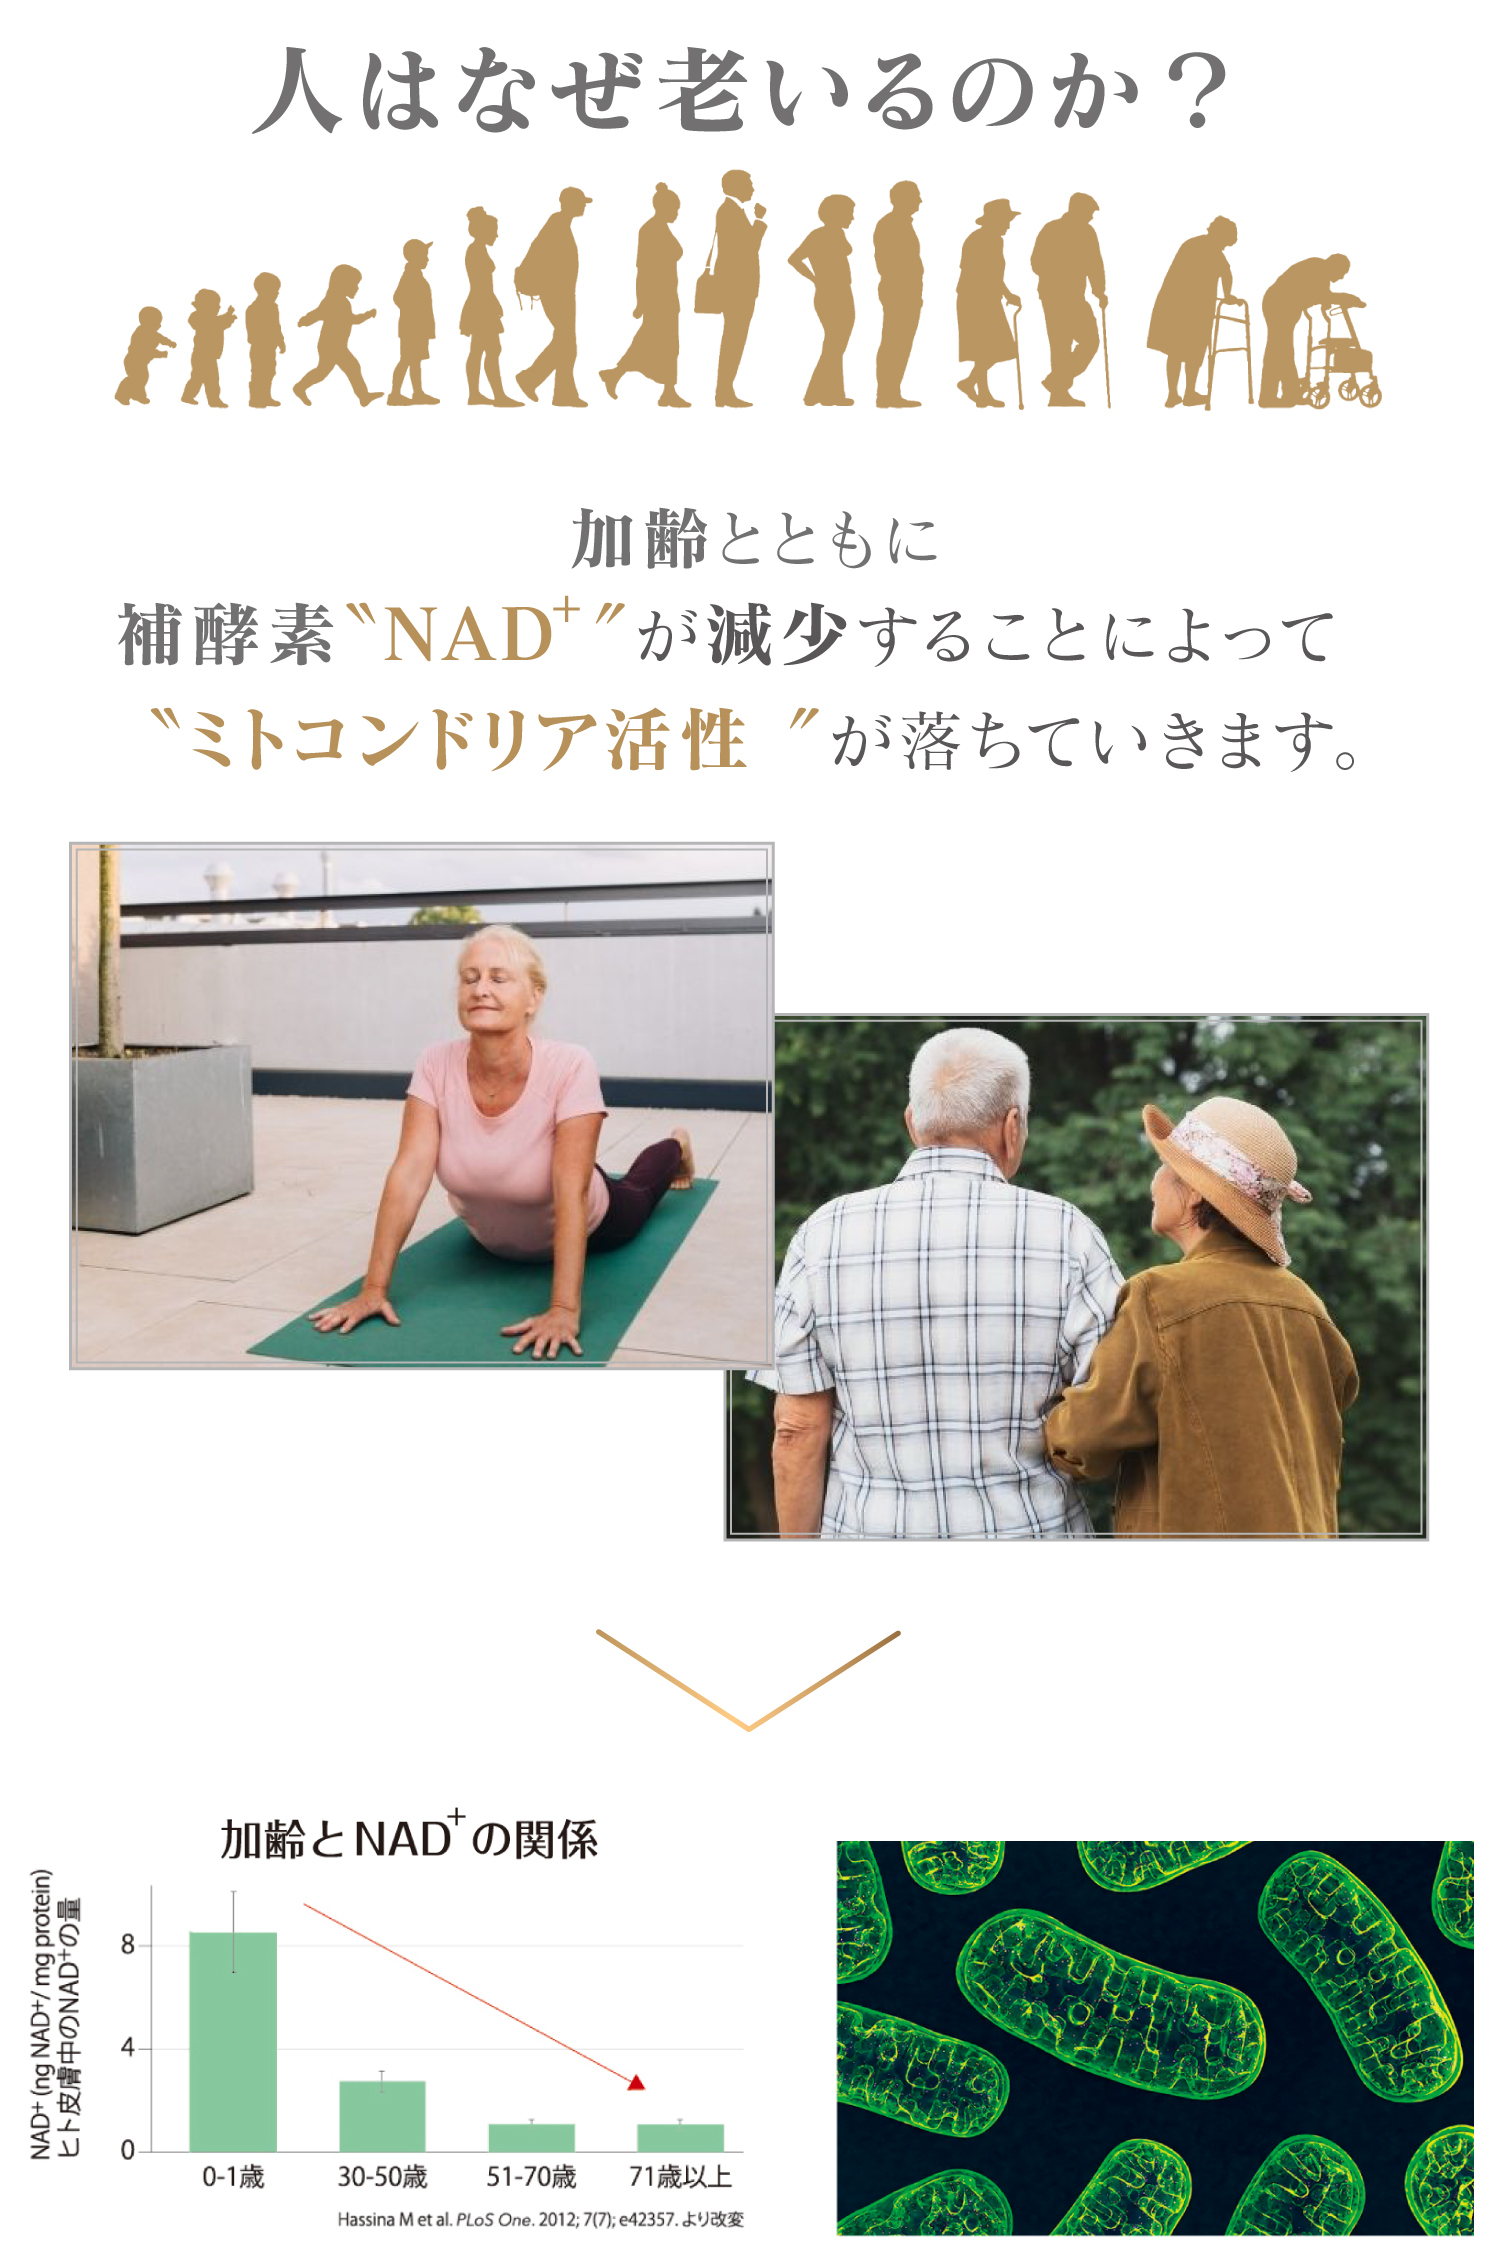 人はなぜ老いるのか?老化とは 補酵素NADが減少することによってミトコンドリア活性”が落ちることつまり、NADの減少は老化を引き起こす最大の原因の1つ